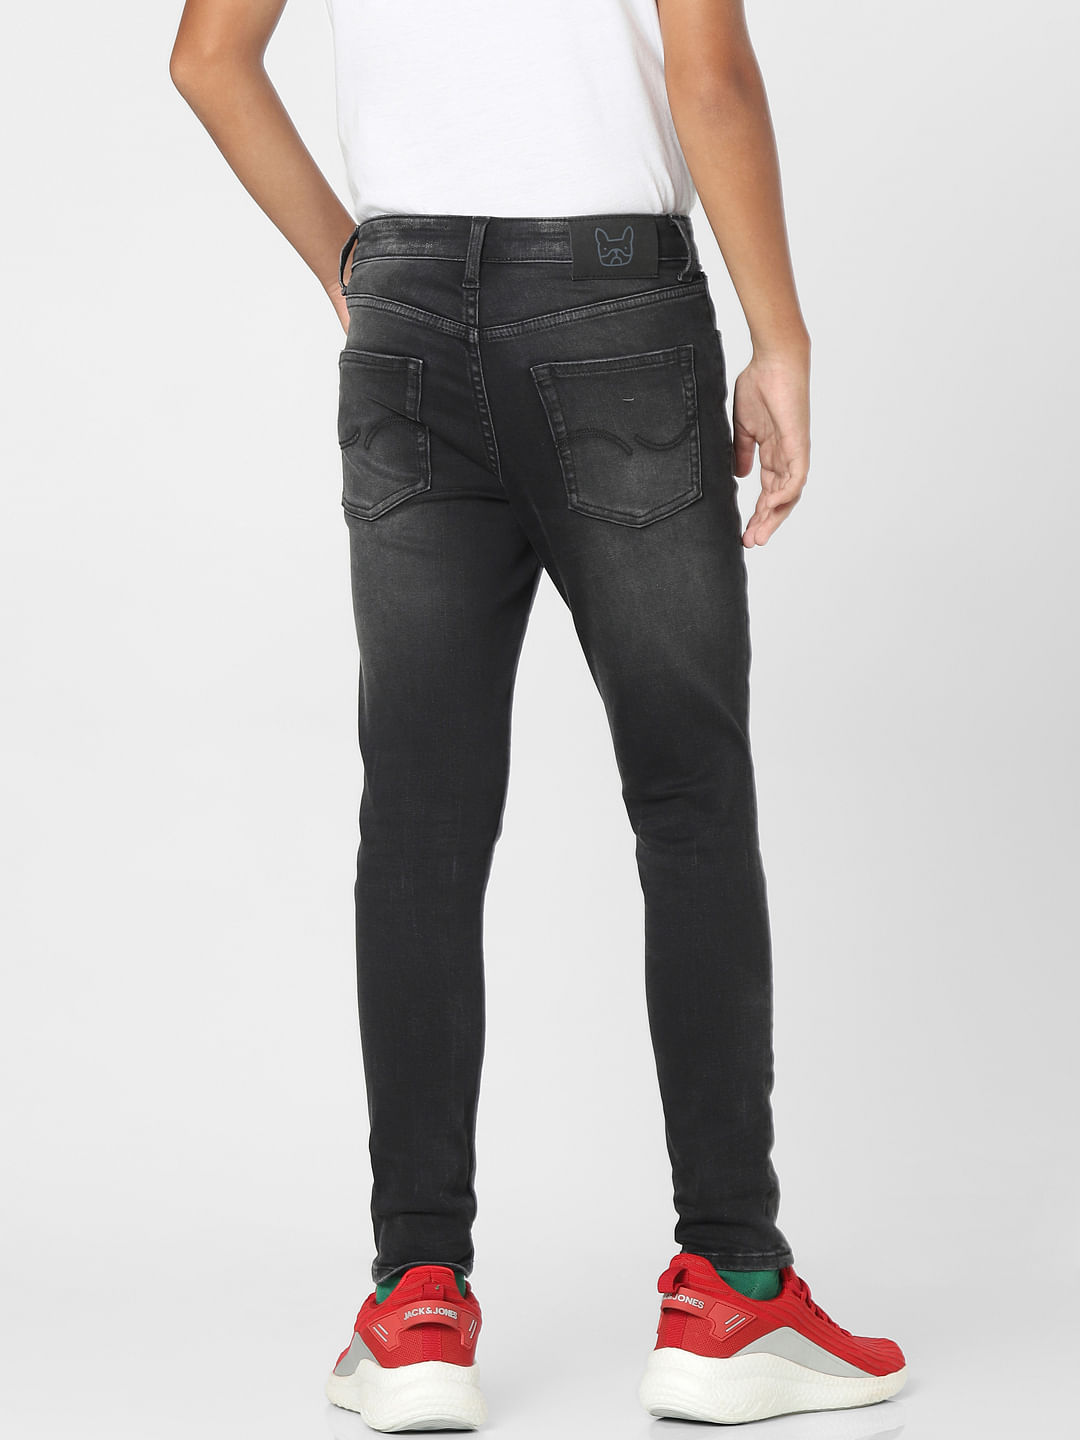 Long Slim-Fit Jeans Black Cotton Denim | DIOR